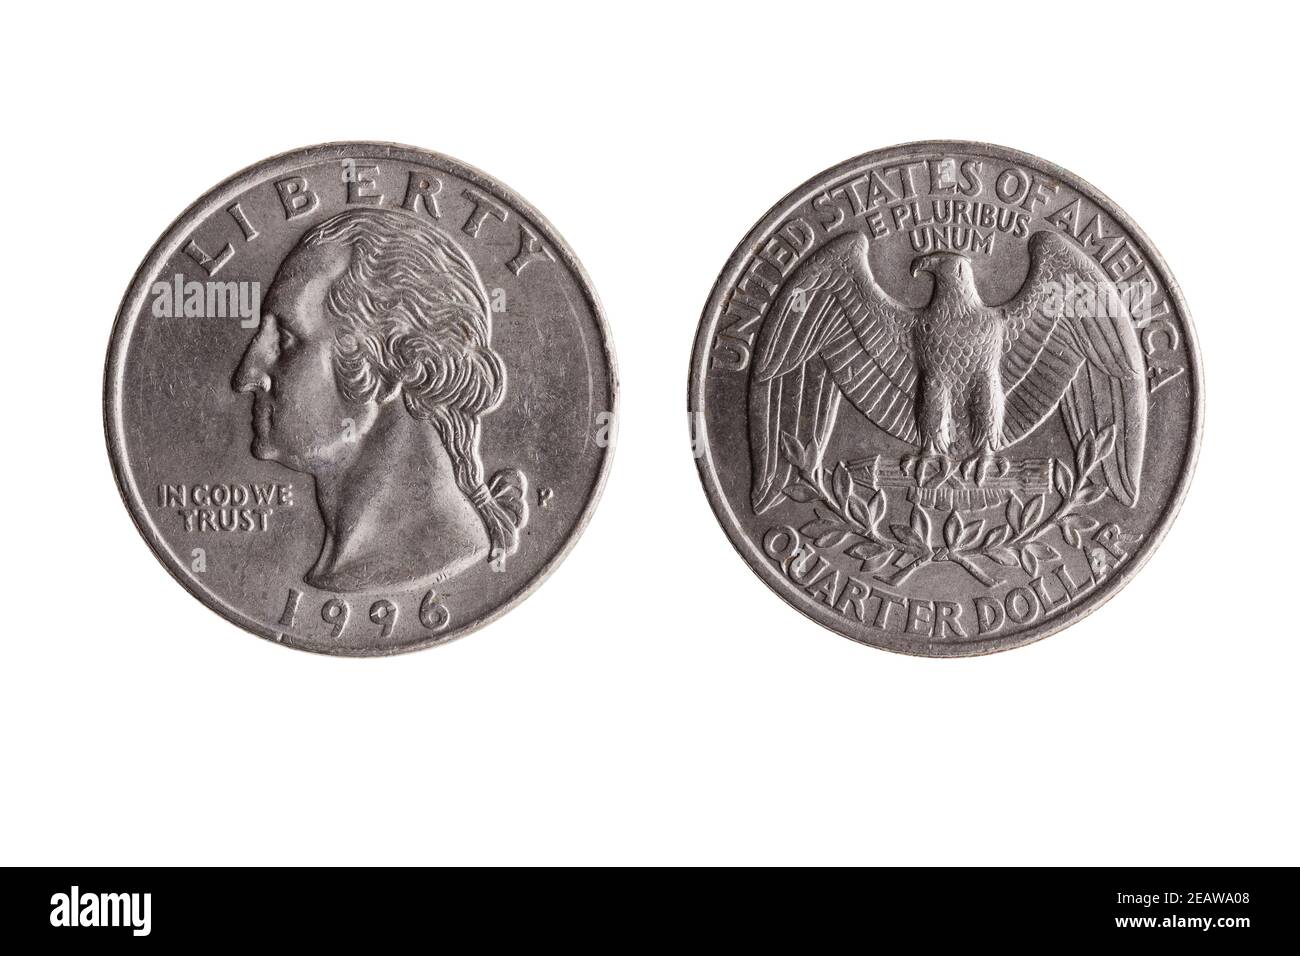 Moneta di nickel da un quarto di dollaro USA (25 centesimi) Con un'immagine ritratto di George Washington Obverse e Bald Eagle inverso Foto Stock